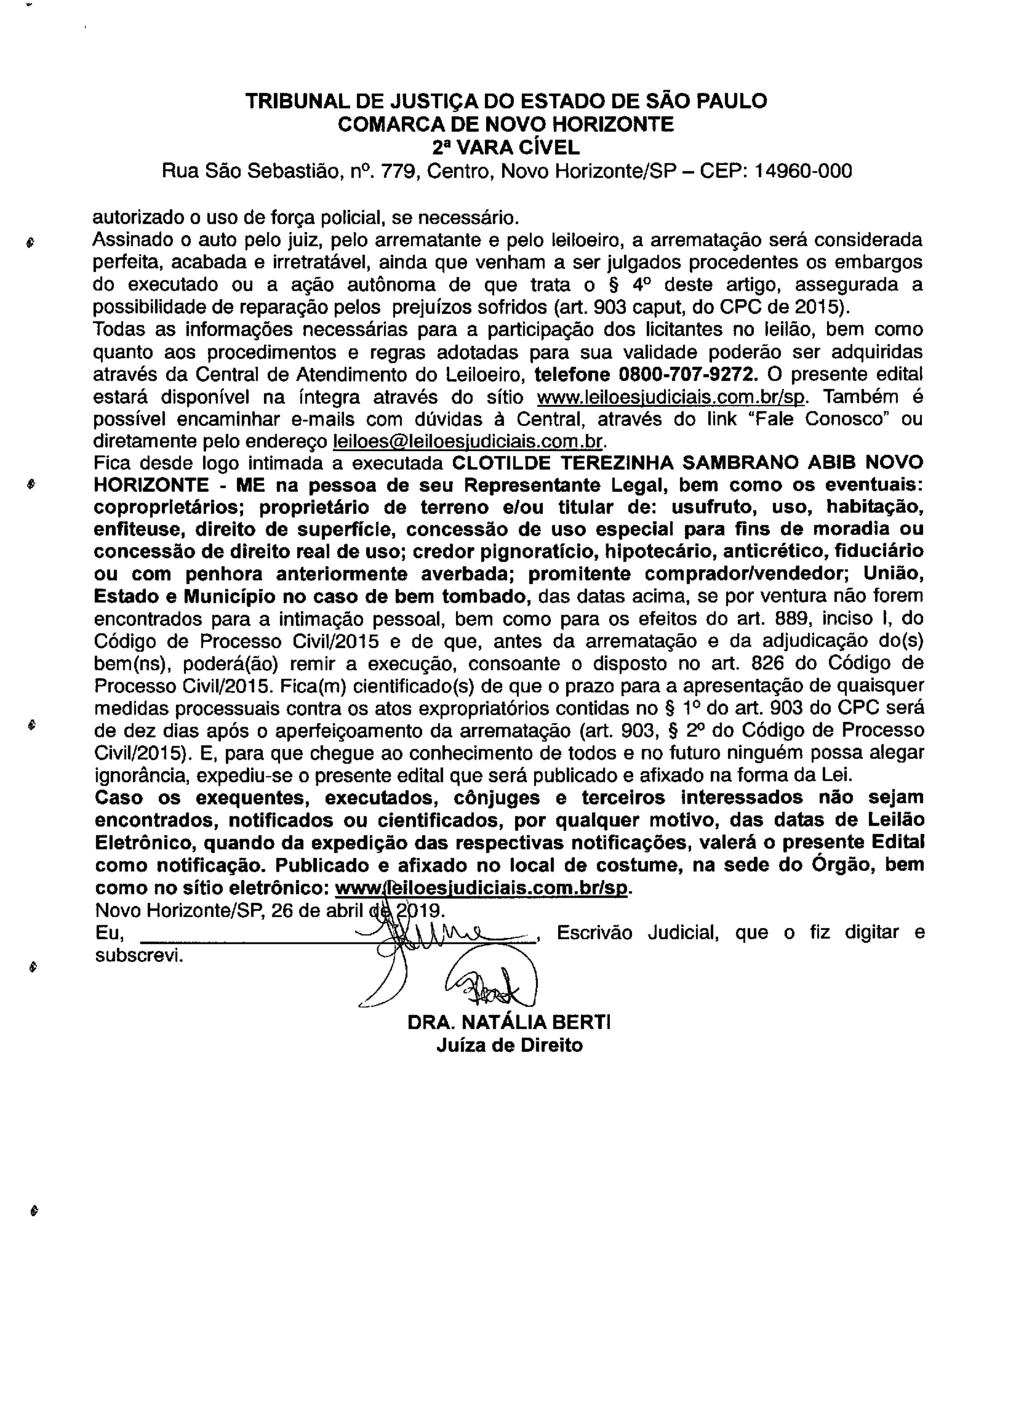 fls. 102 Este documento é cópia do original, assinado digitalmente por LUZIA REGIS DE OLIVEIRA DUARTE, liberado nos autos em 08/05/2019 às 15:14.